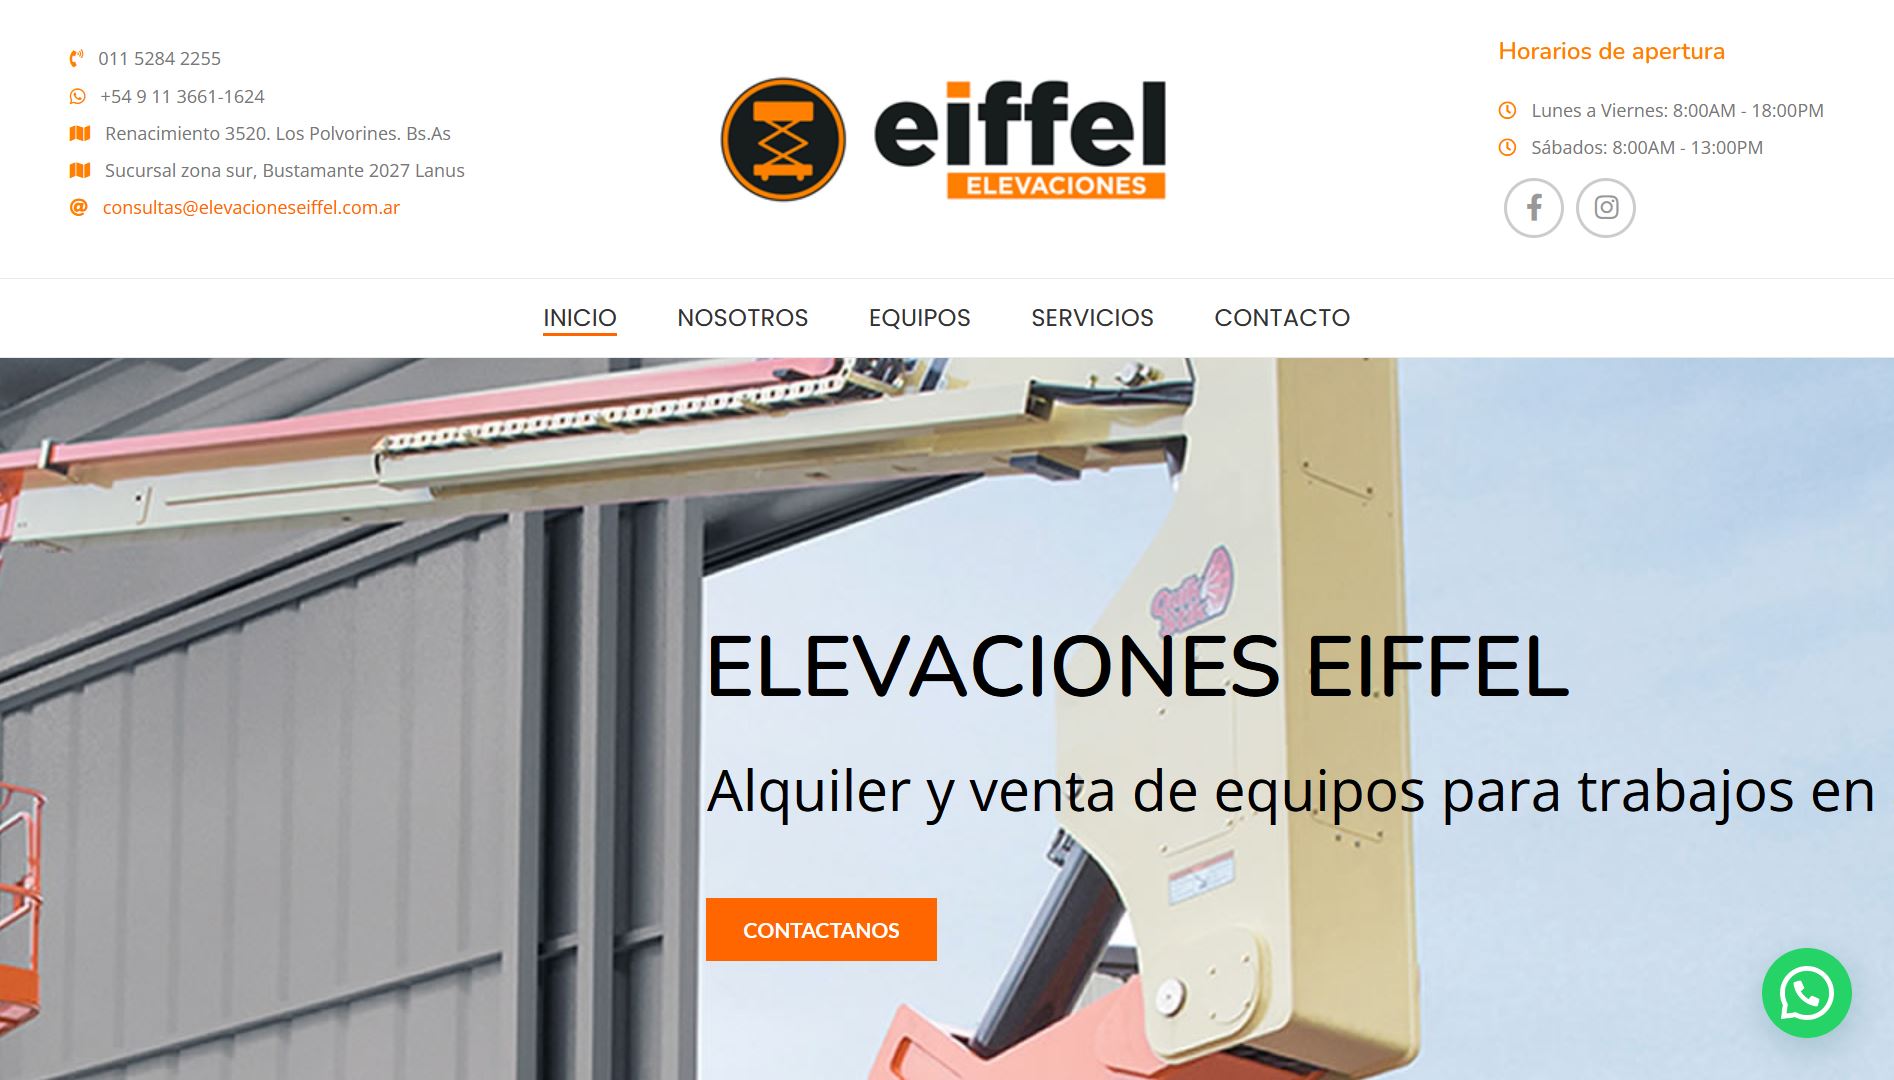 Diseño web institucional para Eiffel Elevaciones se muestra el inicio